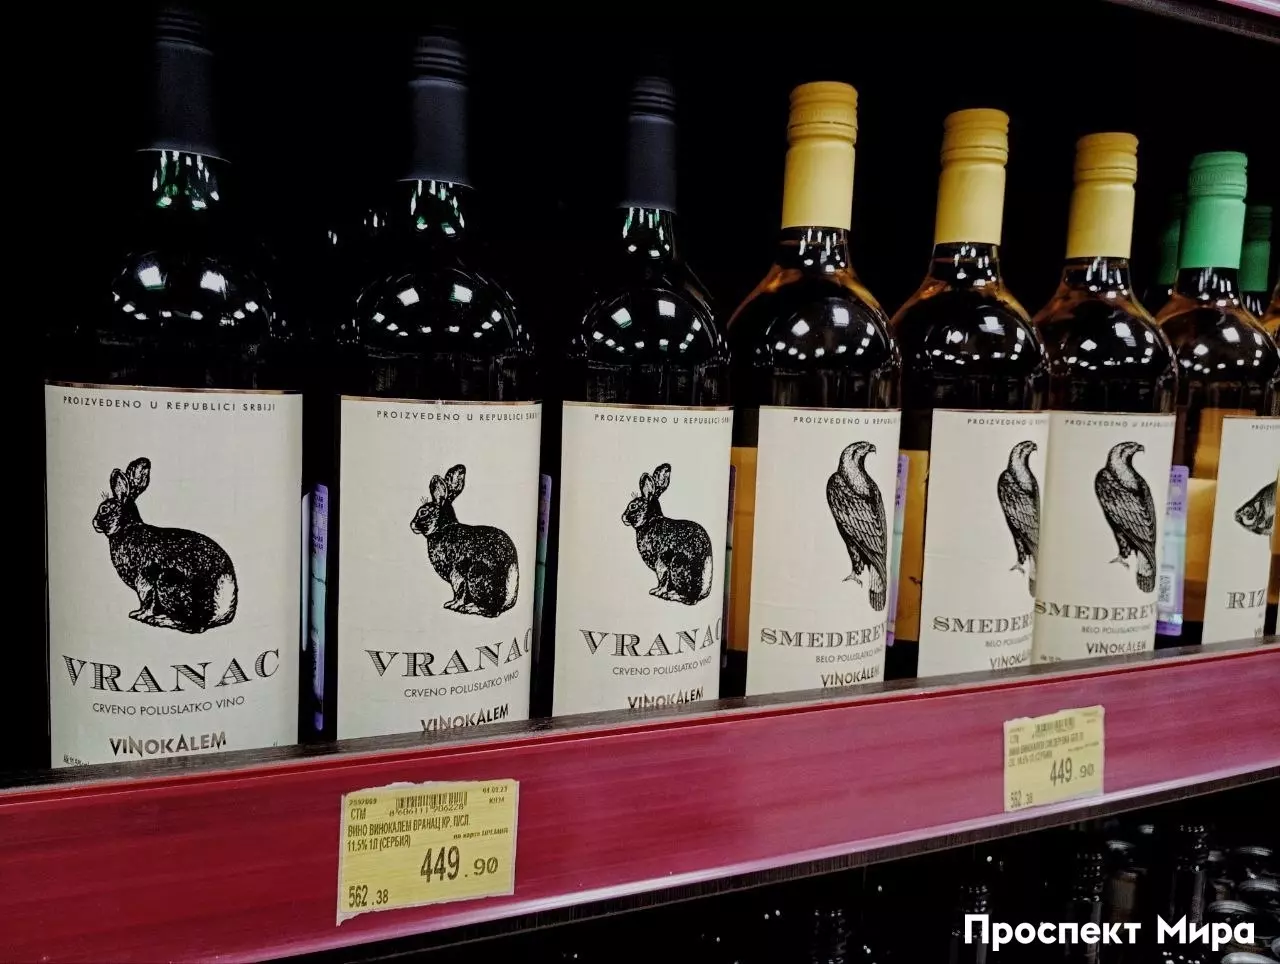 В магазинах действительно стало больше вина из Сербии — например, такого.